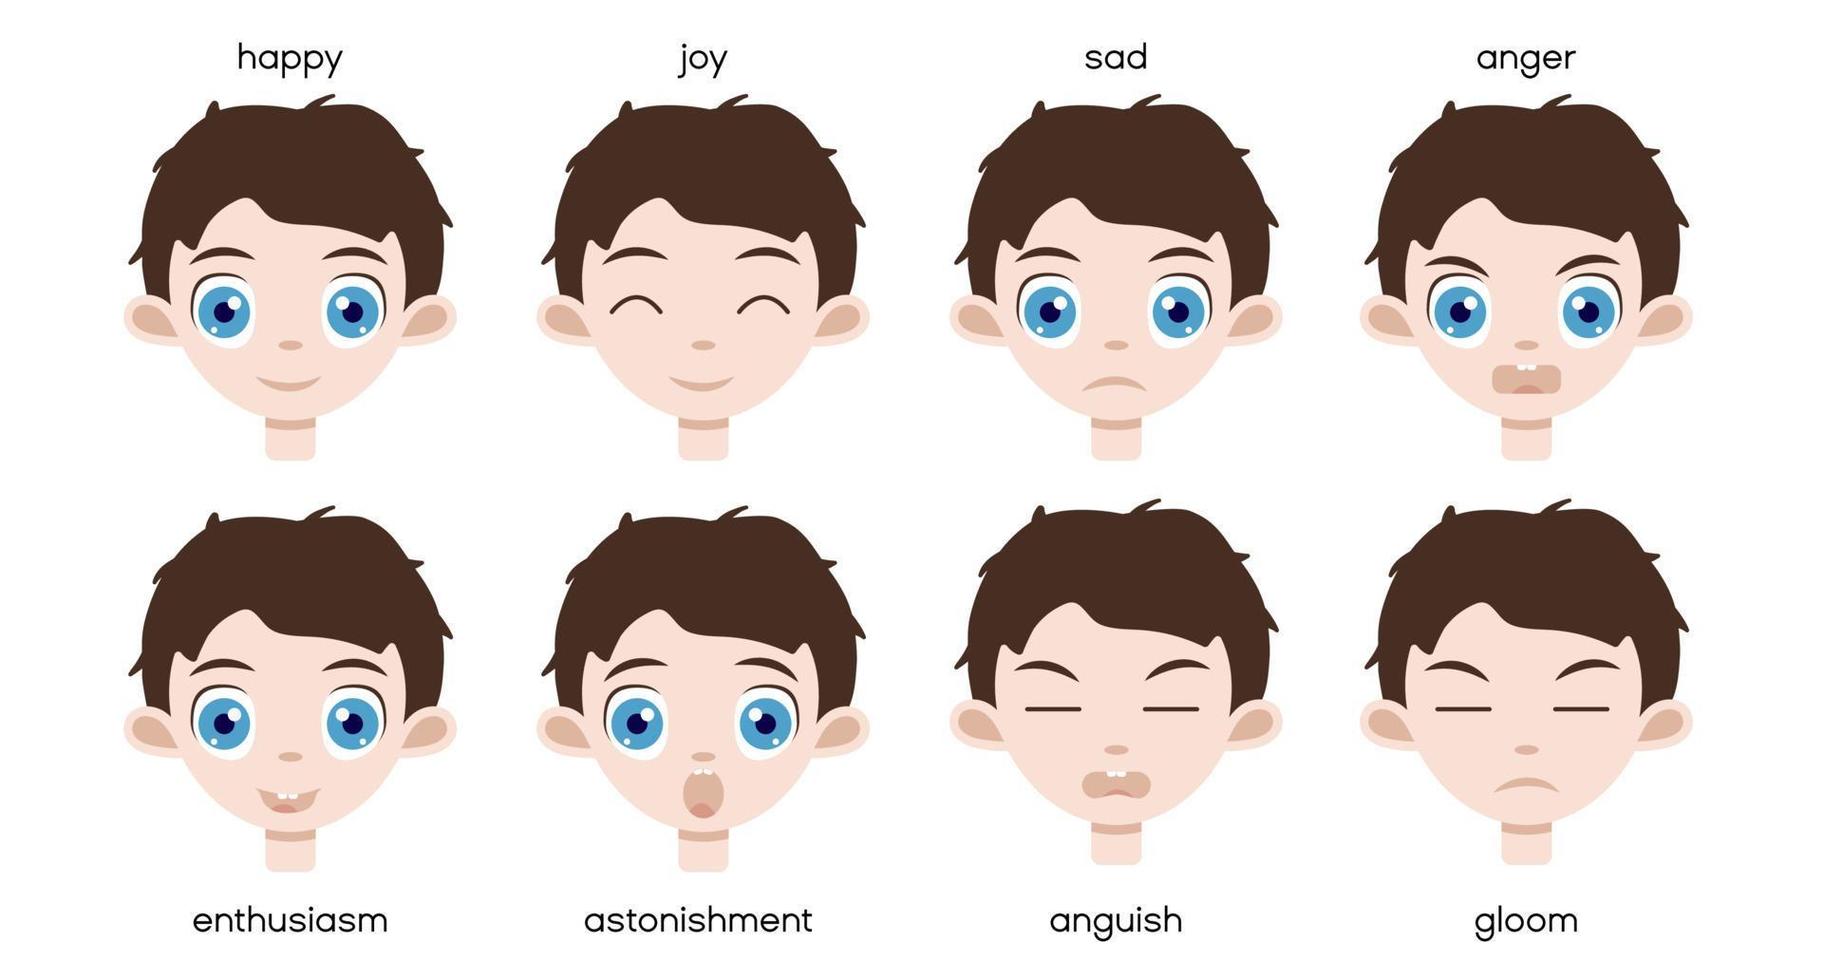 conjunto de las principales emociones felices y tristes en la cara de un niño. Retrato de niño lindo con adorables ojos azules. vector